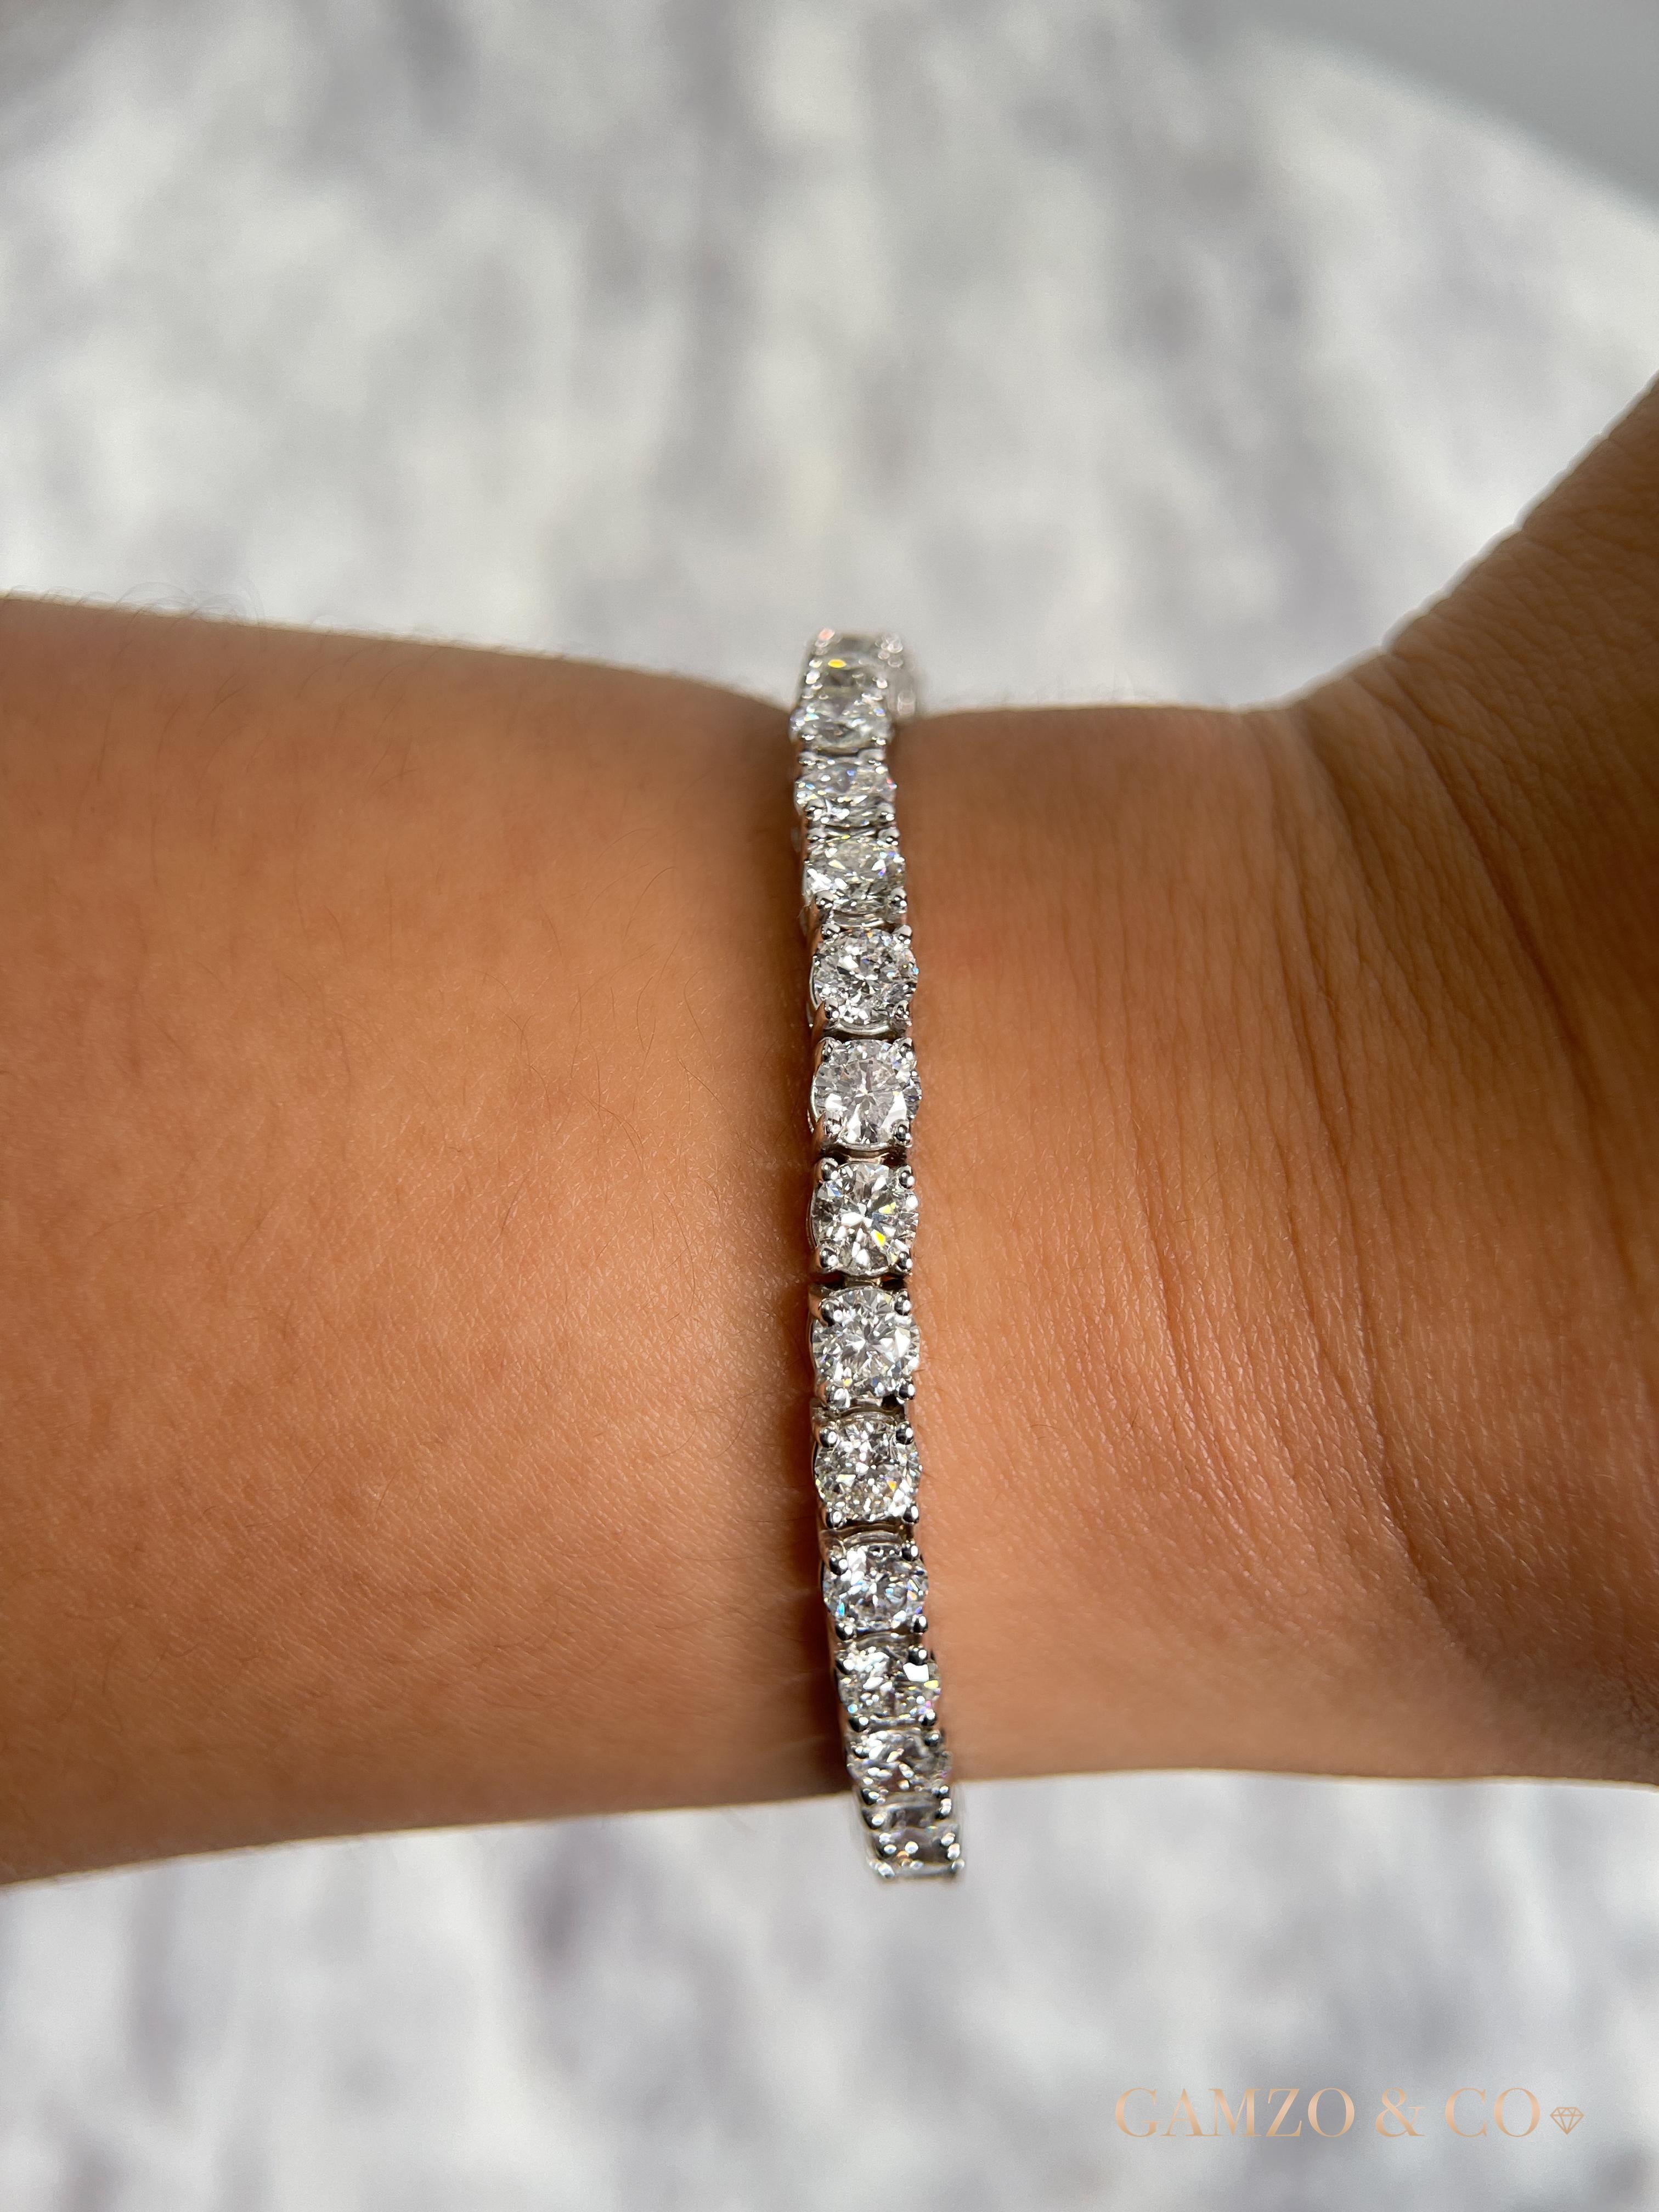 Ce bracelet tennis en diamants présente des diamants ronds magnifiquement taillés et sertis dans de l'or 14k.

Métal : Or 14k
Coupe du diamant : Diamant naturel rond 
Nombre total de carats de diamants : 12ct
Clarté du diamant : VS
Couleur du